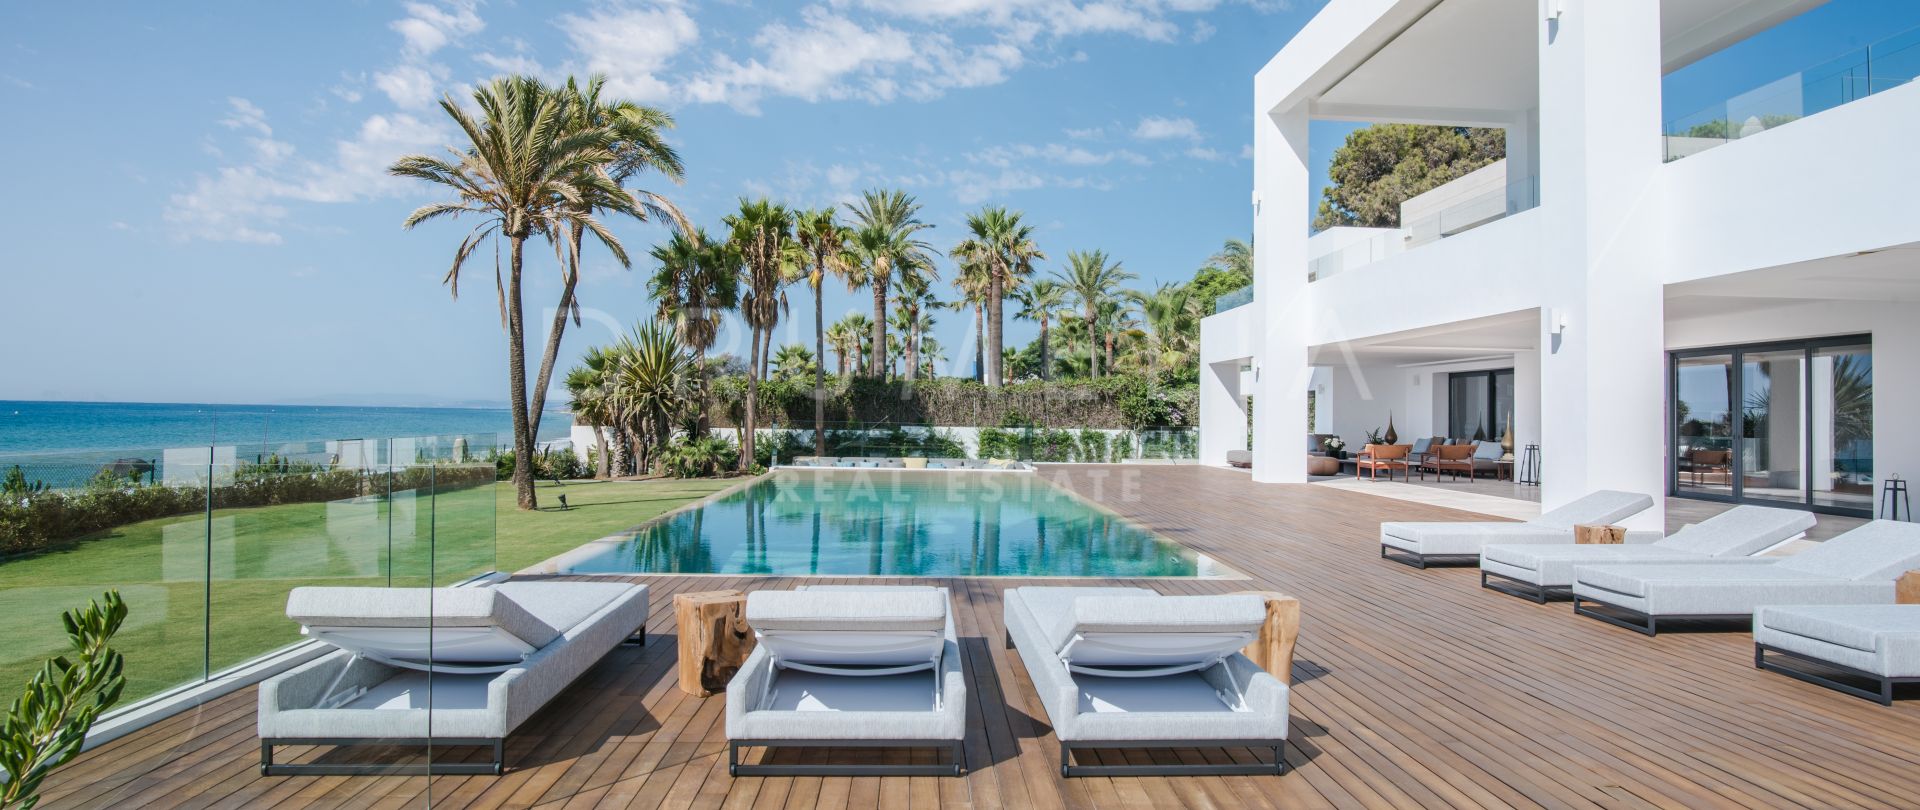 La Perla Blanca - Villa moderna realmente impresionante frente al mar, el Paraiso Barronal, Estepona